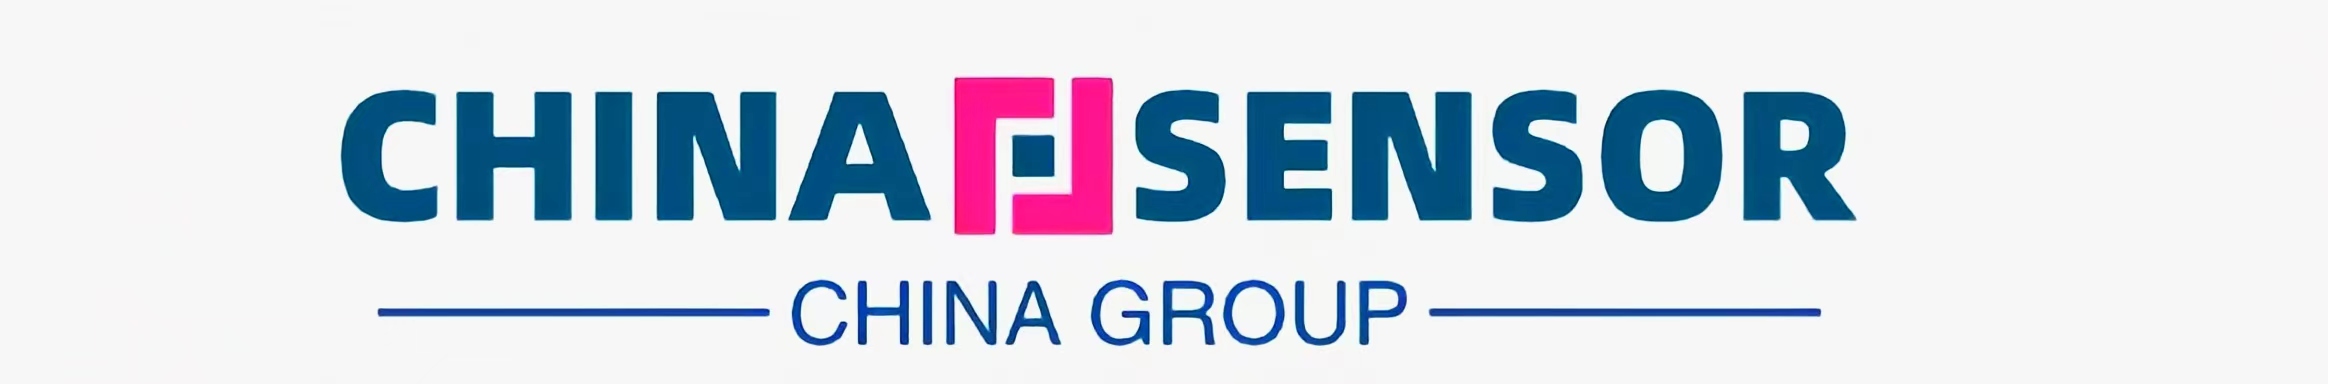 china sensor,china sensors,sensorchina,China sensor manufacturer